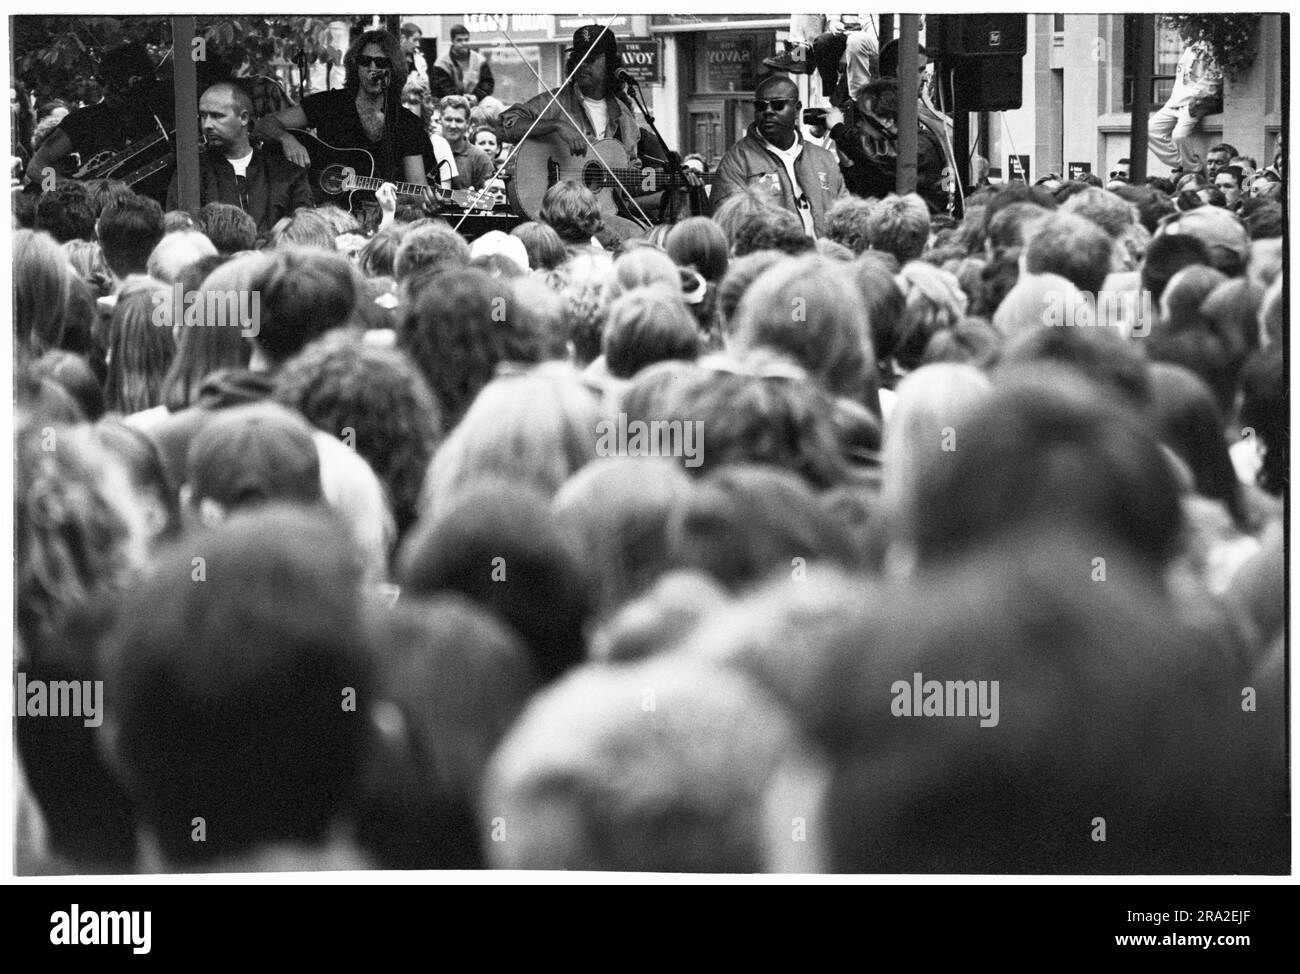 Grande folla nei panni dei Bon Jovi che suonano in un concerto di free busking sul palco di Queen Street, Cardiff, Galles, Regno Unito, il 21 giugno 1995. Il concerto era quello di pubblicizzare il concerto poco venduto all'Arms Park Stadium il giorno successivo. Foto: Rob Watkins Foto Stock